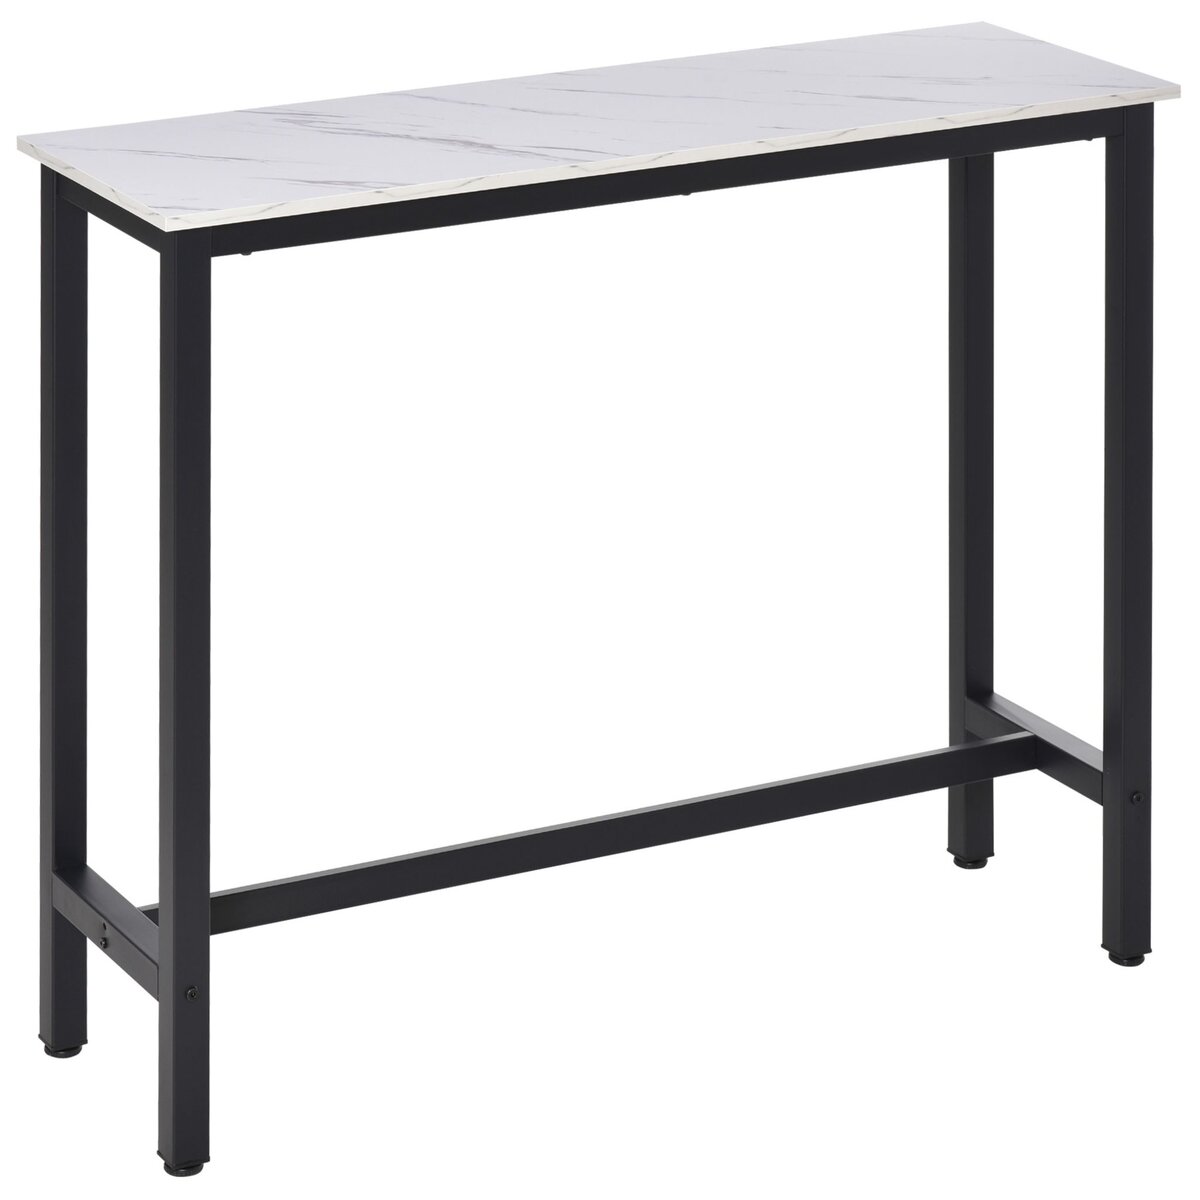 HOMCOM Table de bar - table haute de cuisine - dim. 120L x 40l x 100H cm - châssis piètement acier noir, plateau aspect marbre blanc